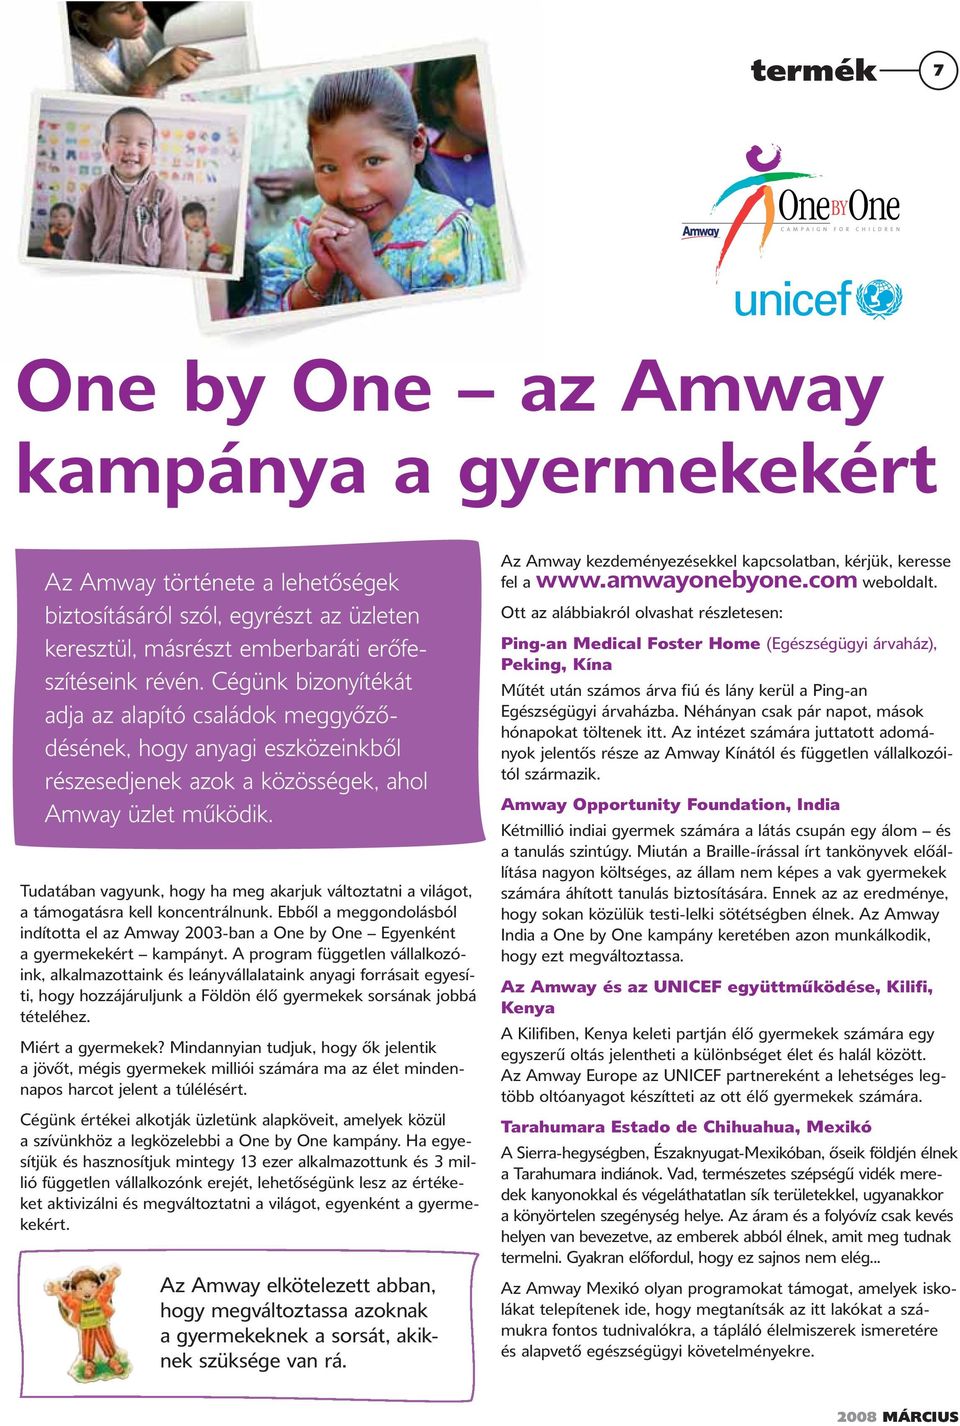 Tudatában vagyunk, hogy ha meg akarjuk változtatni a világot, a támogatásra kell koncentrálnunk. Ebből a meggondolásból indította el az Amway 2003-ban a One by One Egyenként a gyermekekért kampányt.